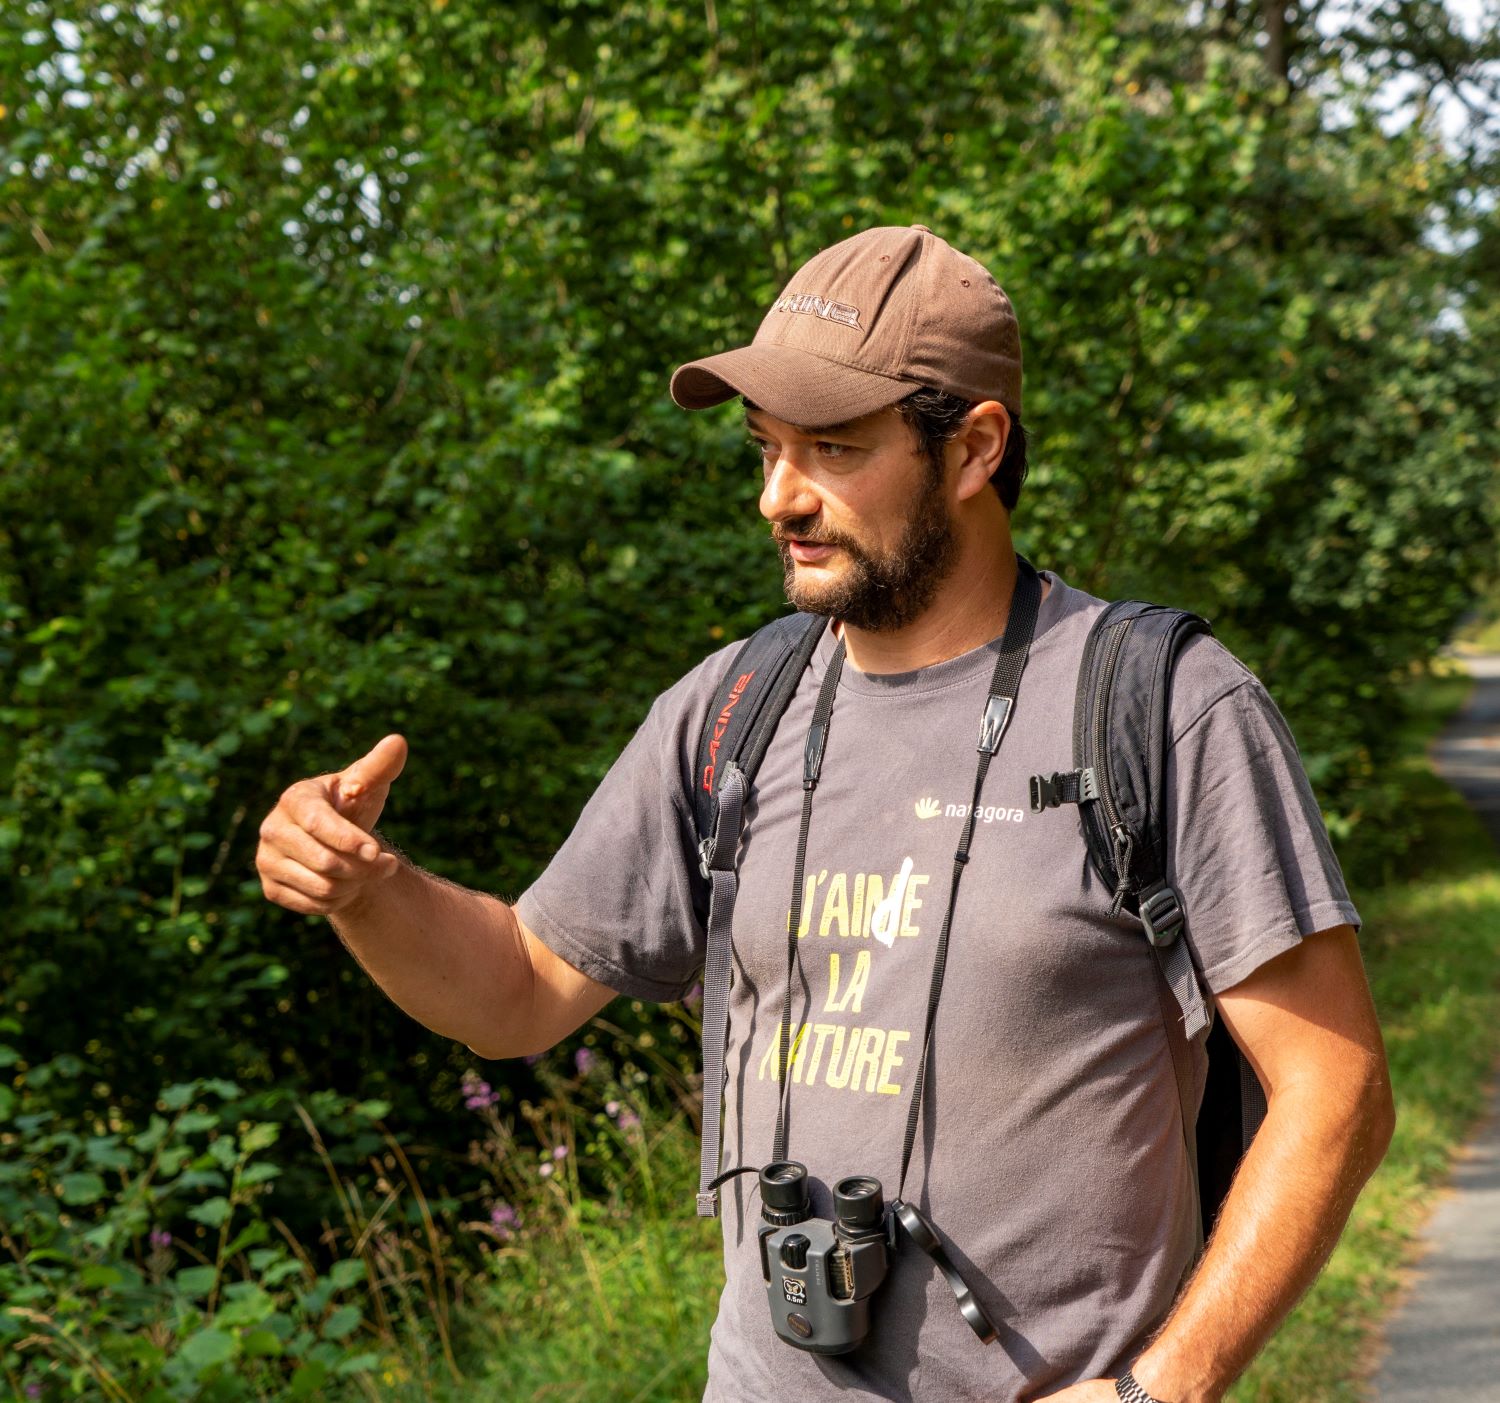 Un homme portant une casquette marron et une chemise avec les mots "J'aime la nature" fait des gestes en parlant de la nature sauvage de la région. Un appareil photo est suspendu à son cou.